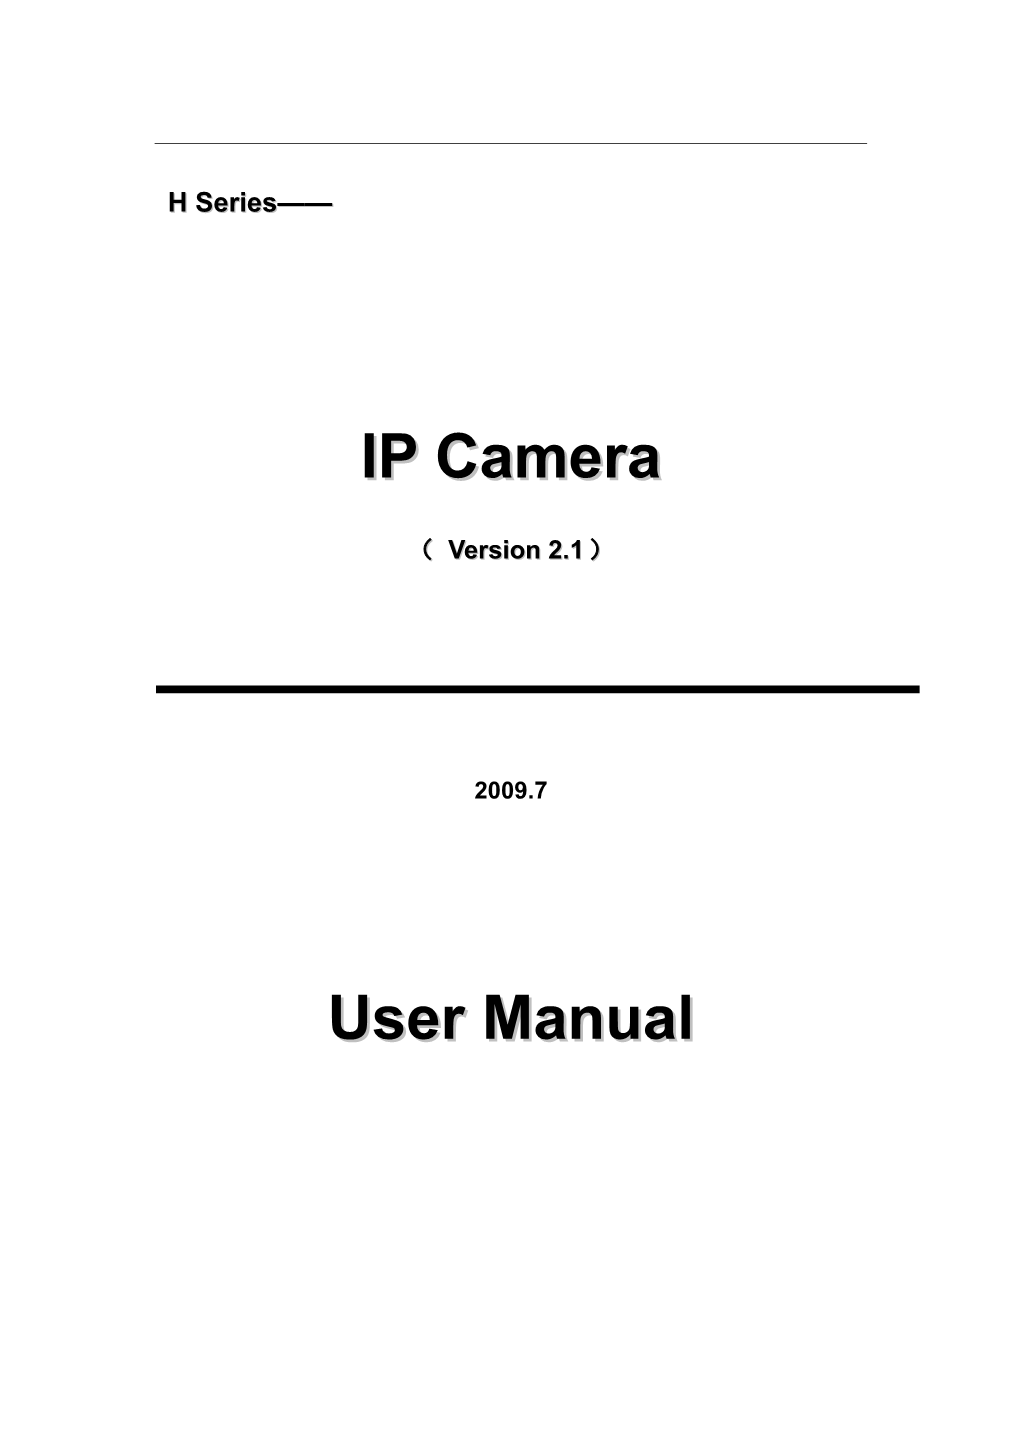 H Sereis User Manual